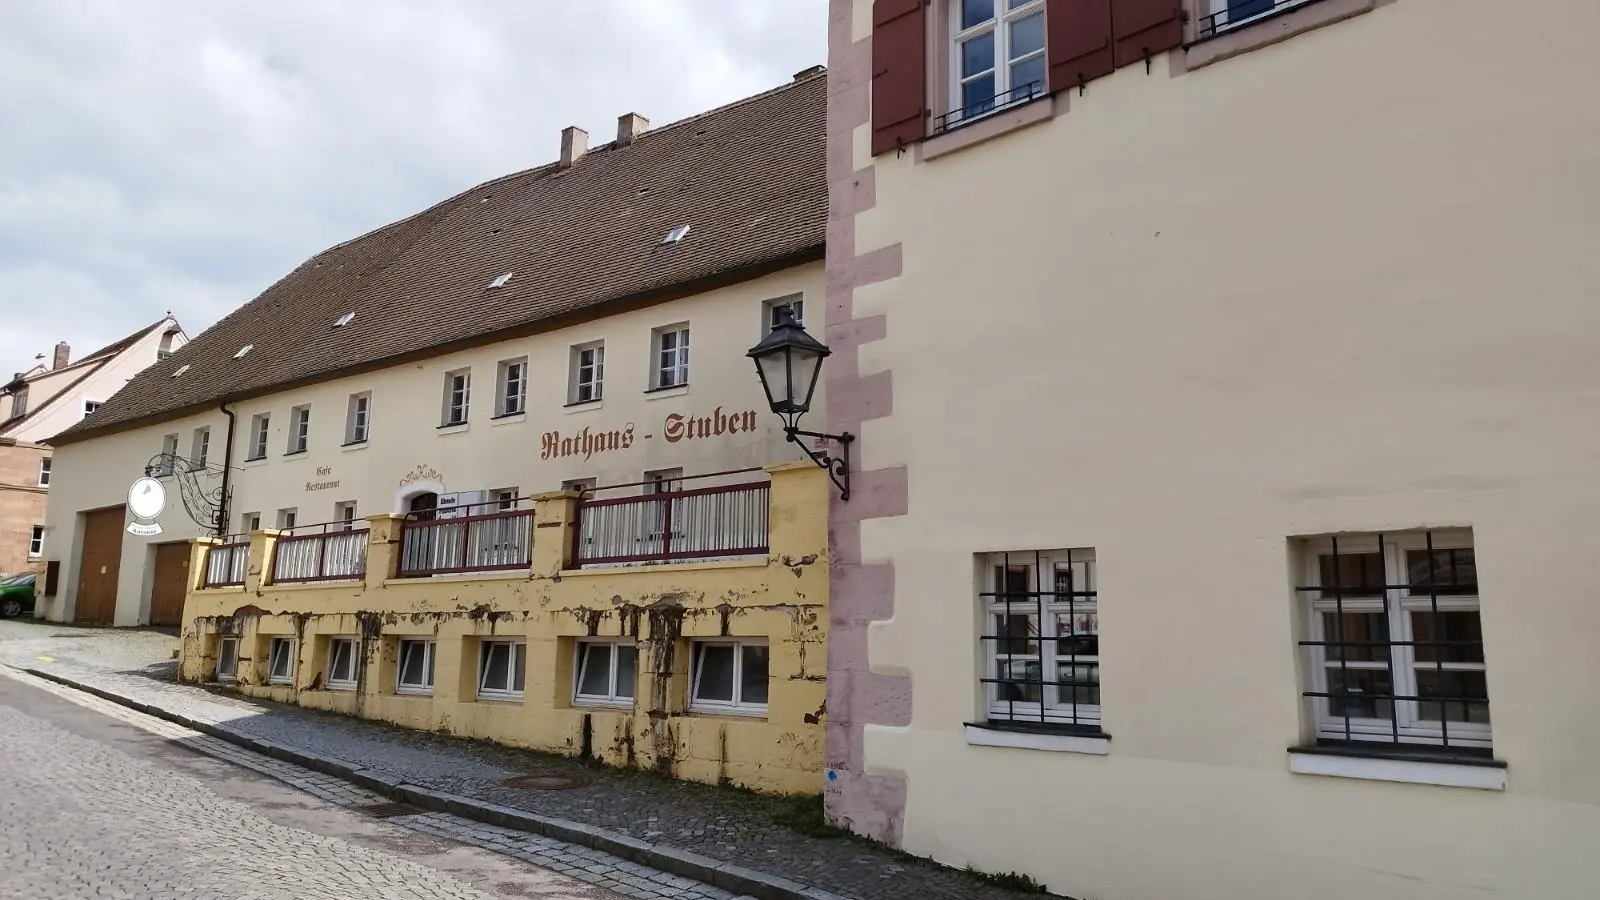 Die Stadt Merkendorf will den einstigen Brauereikomplex neben dem Rathaus herrichten. Weil sie das finanziell eigentlich nicht stemmen kann, will man nun nach einem Investor suchen. (Foto: Robert Maurer)